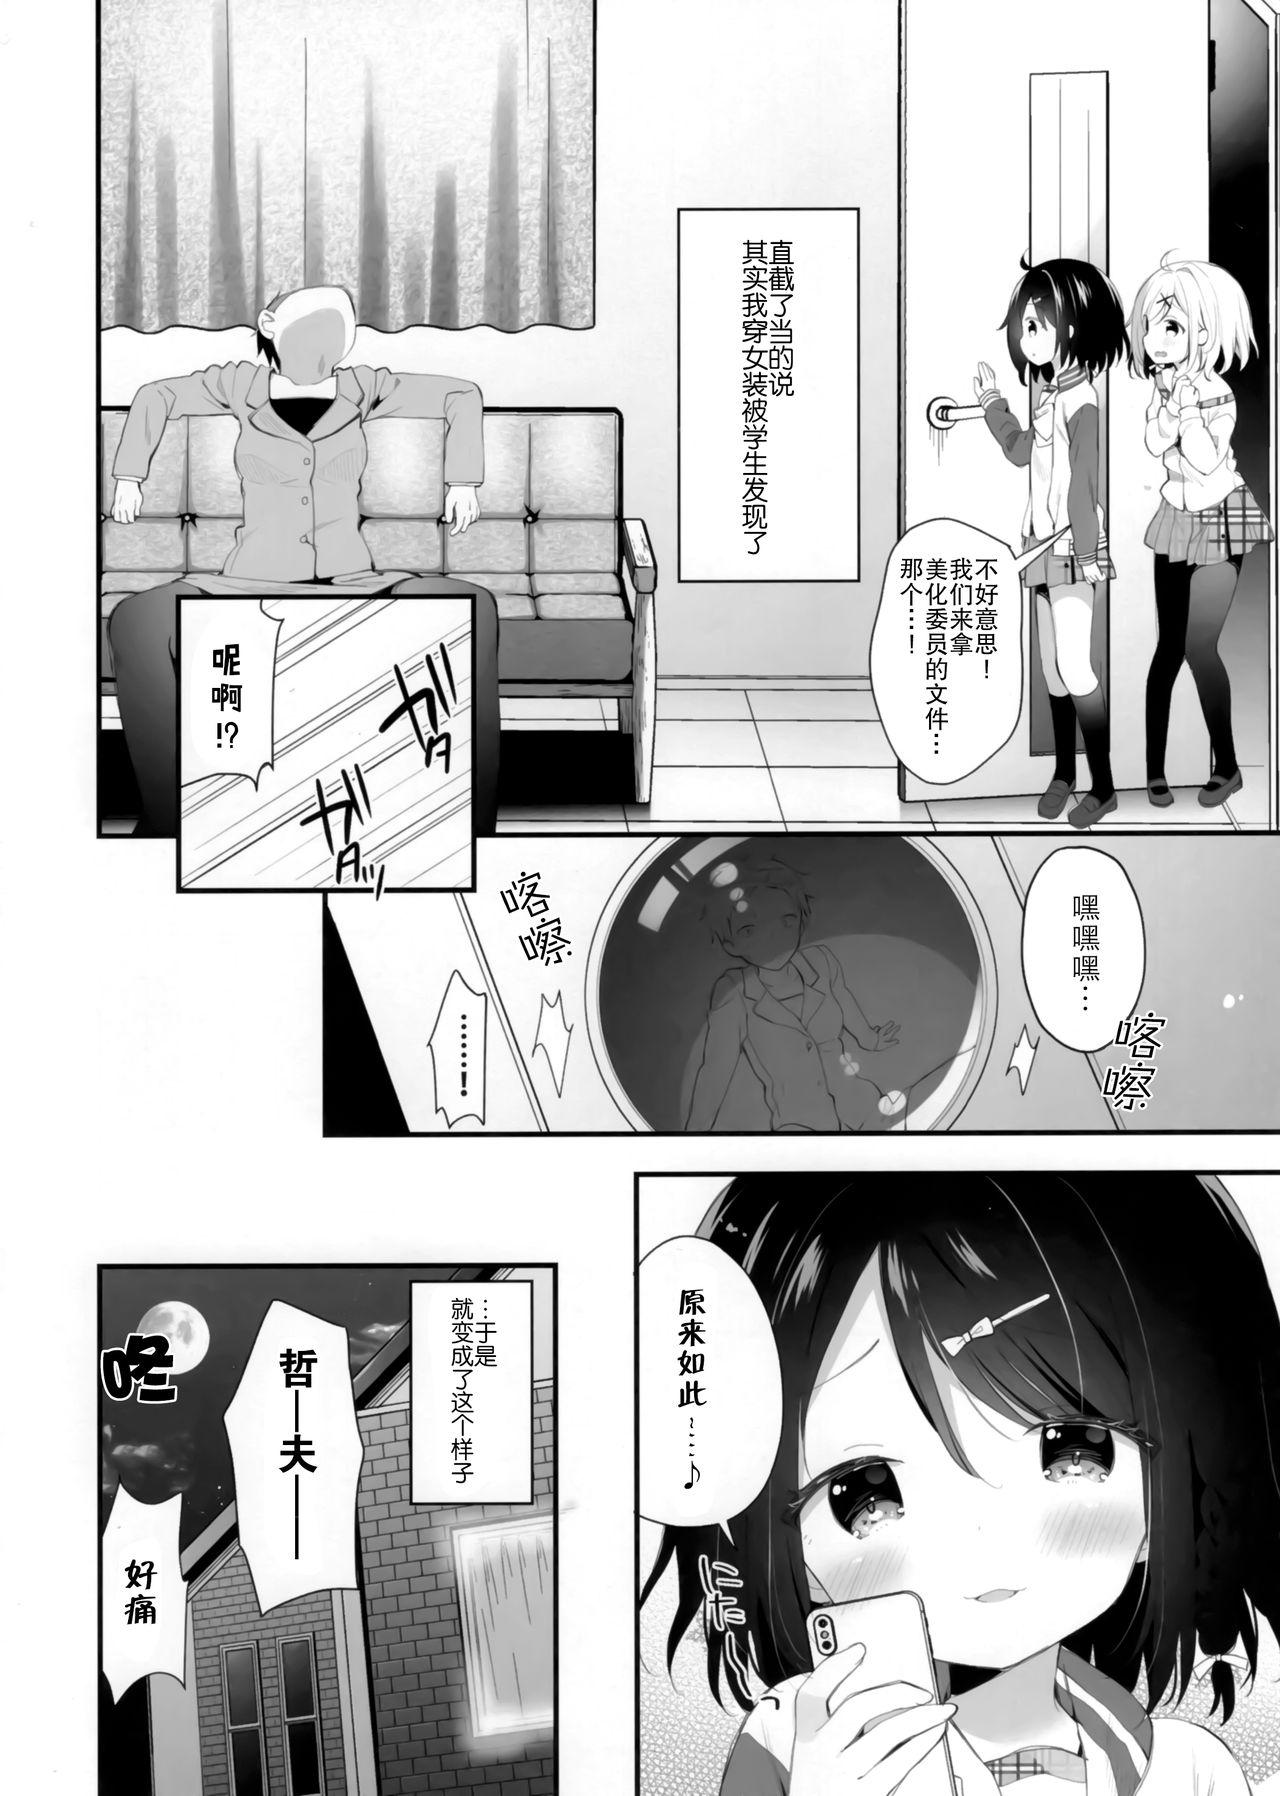 Famosa Futago-chan ni wa sakaraena i~tsu! - Original Grande - Page 7